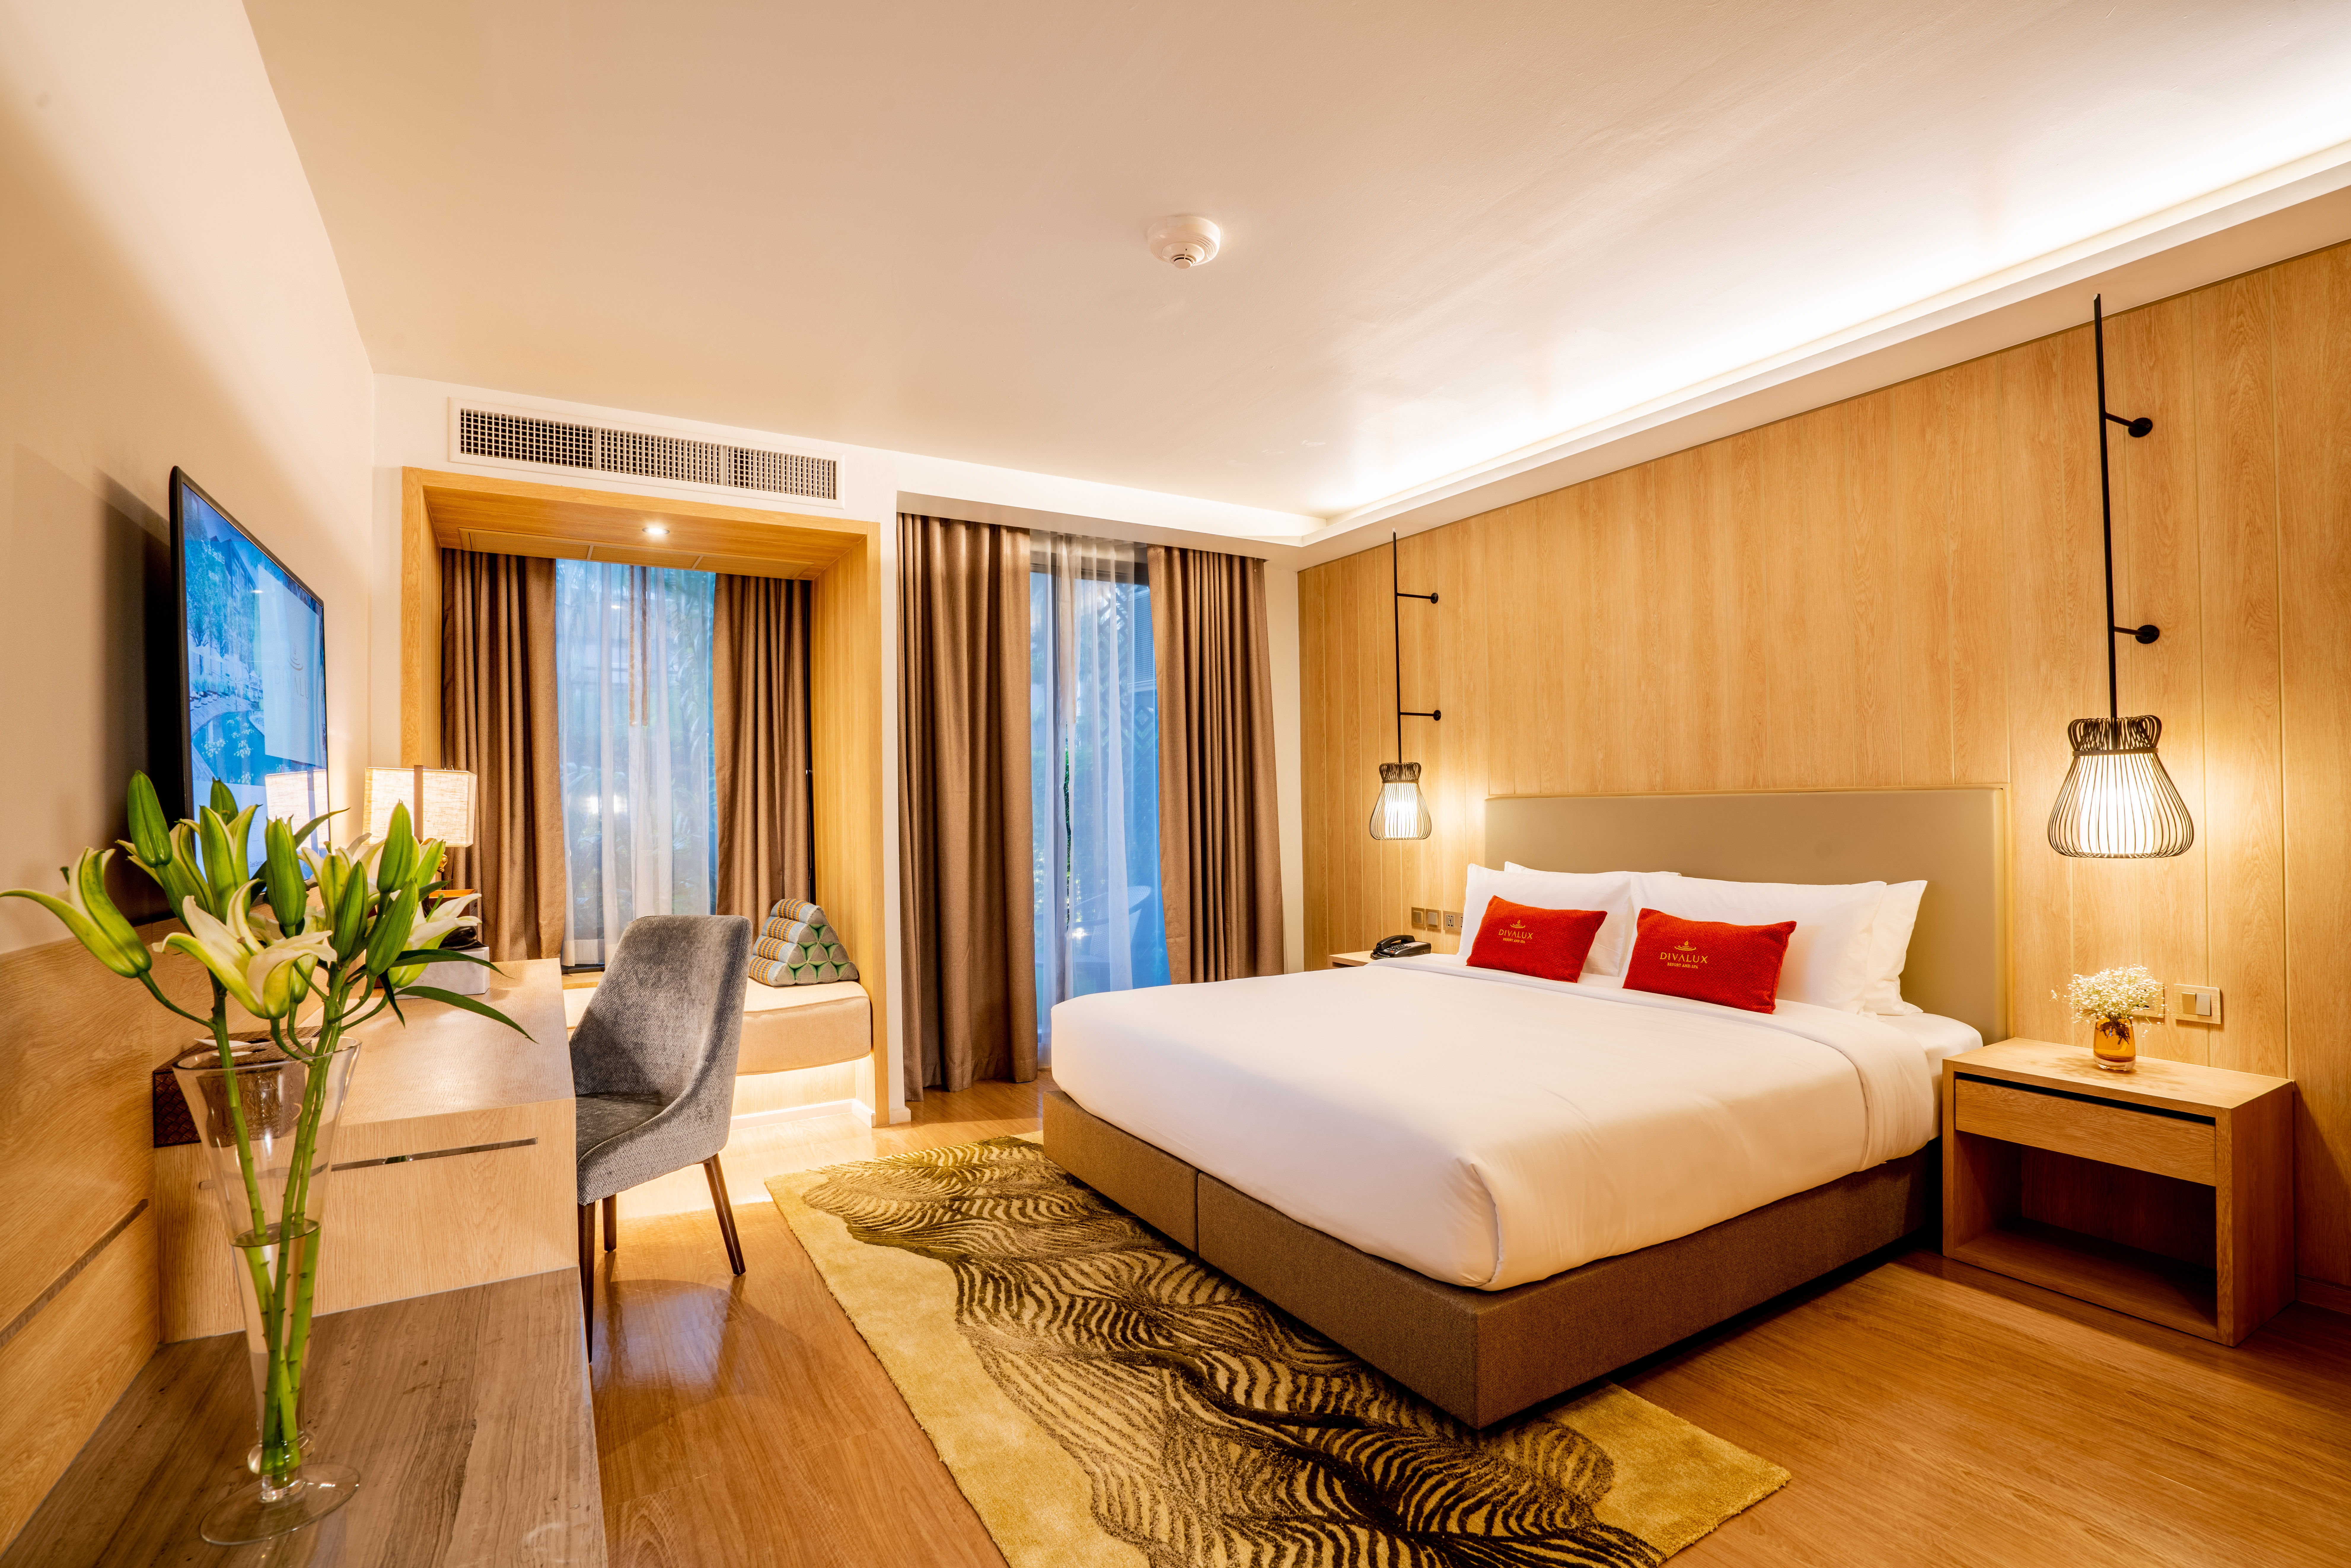 Divalux Resort & Spa Bangkok